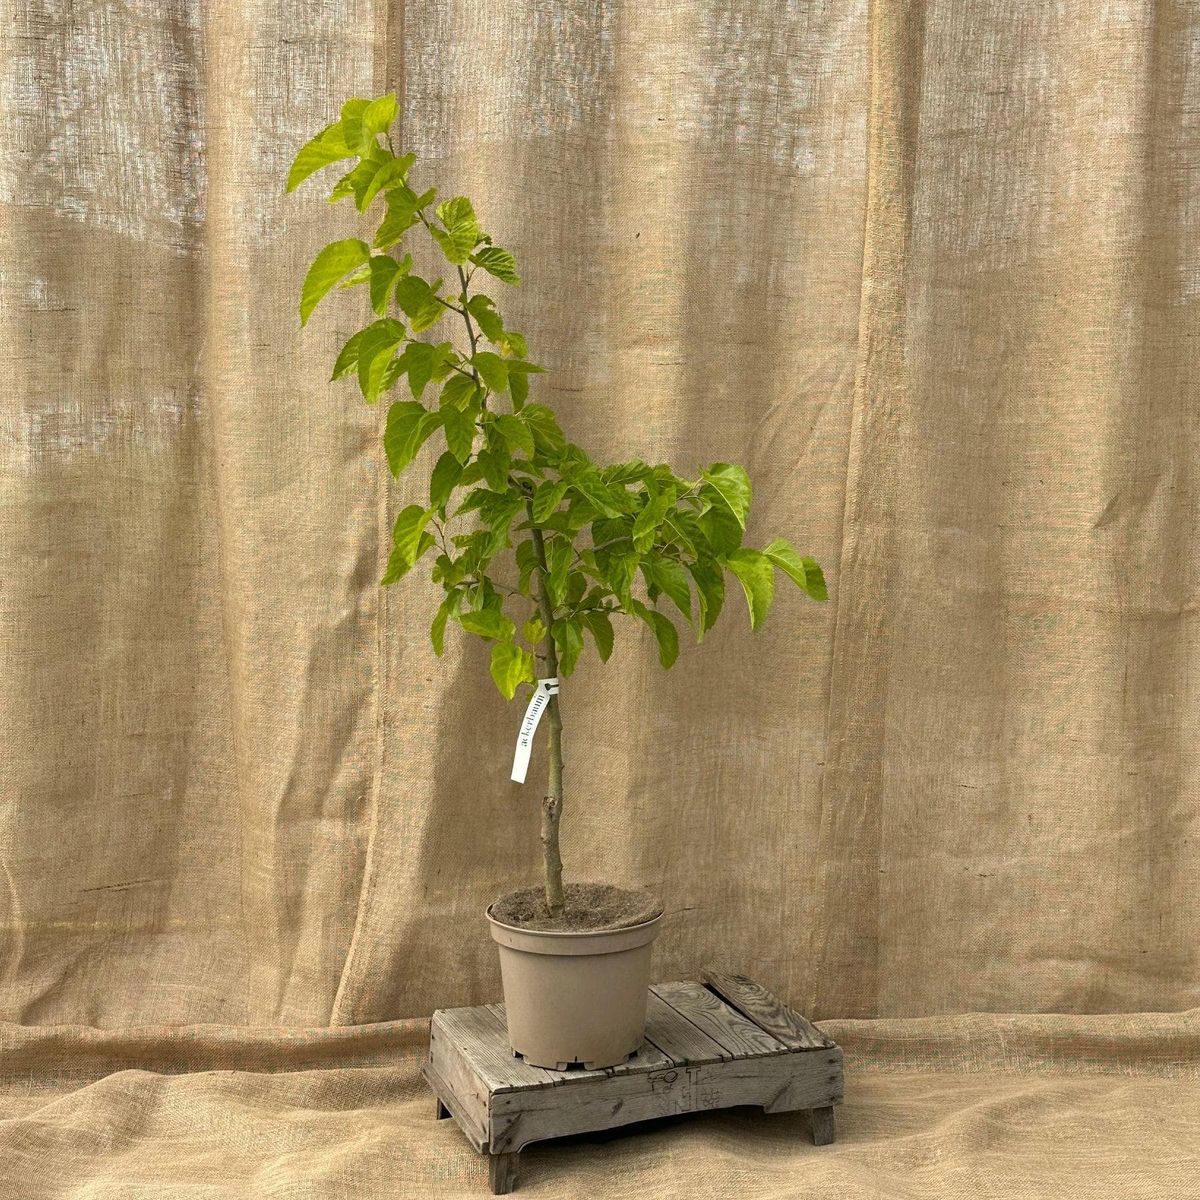 ackerbaum Maulbeerbaum - Kokuso kaufen